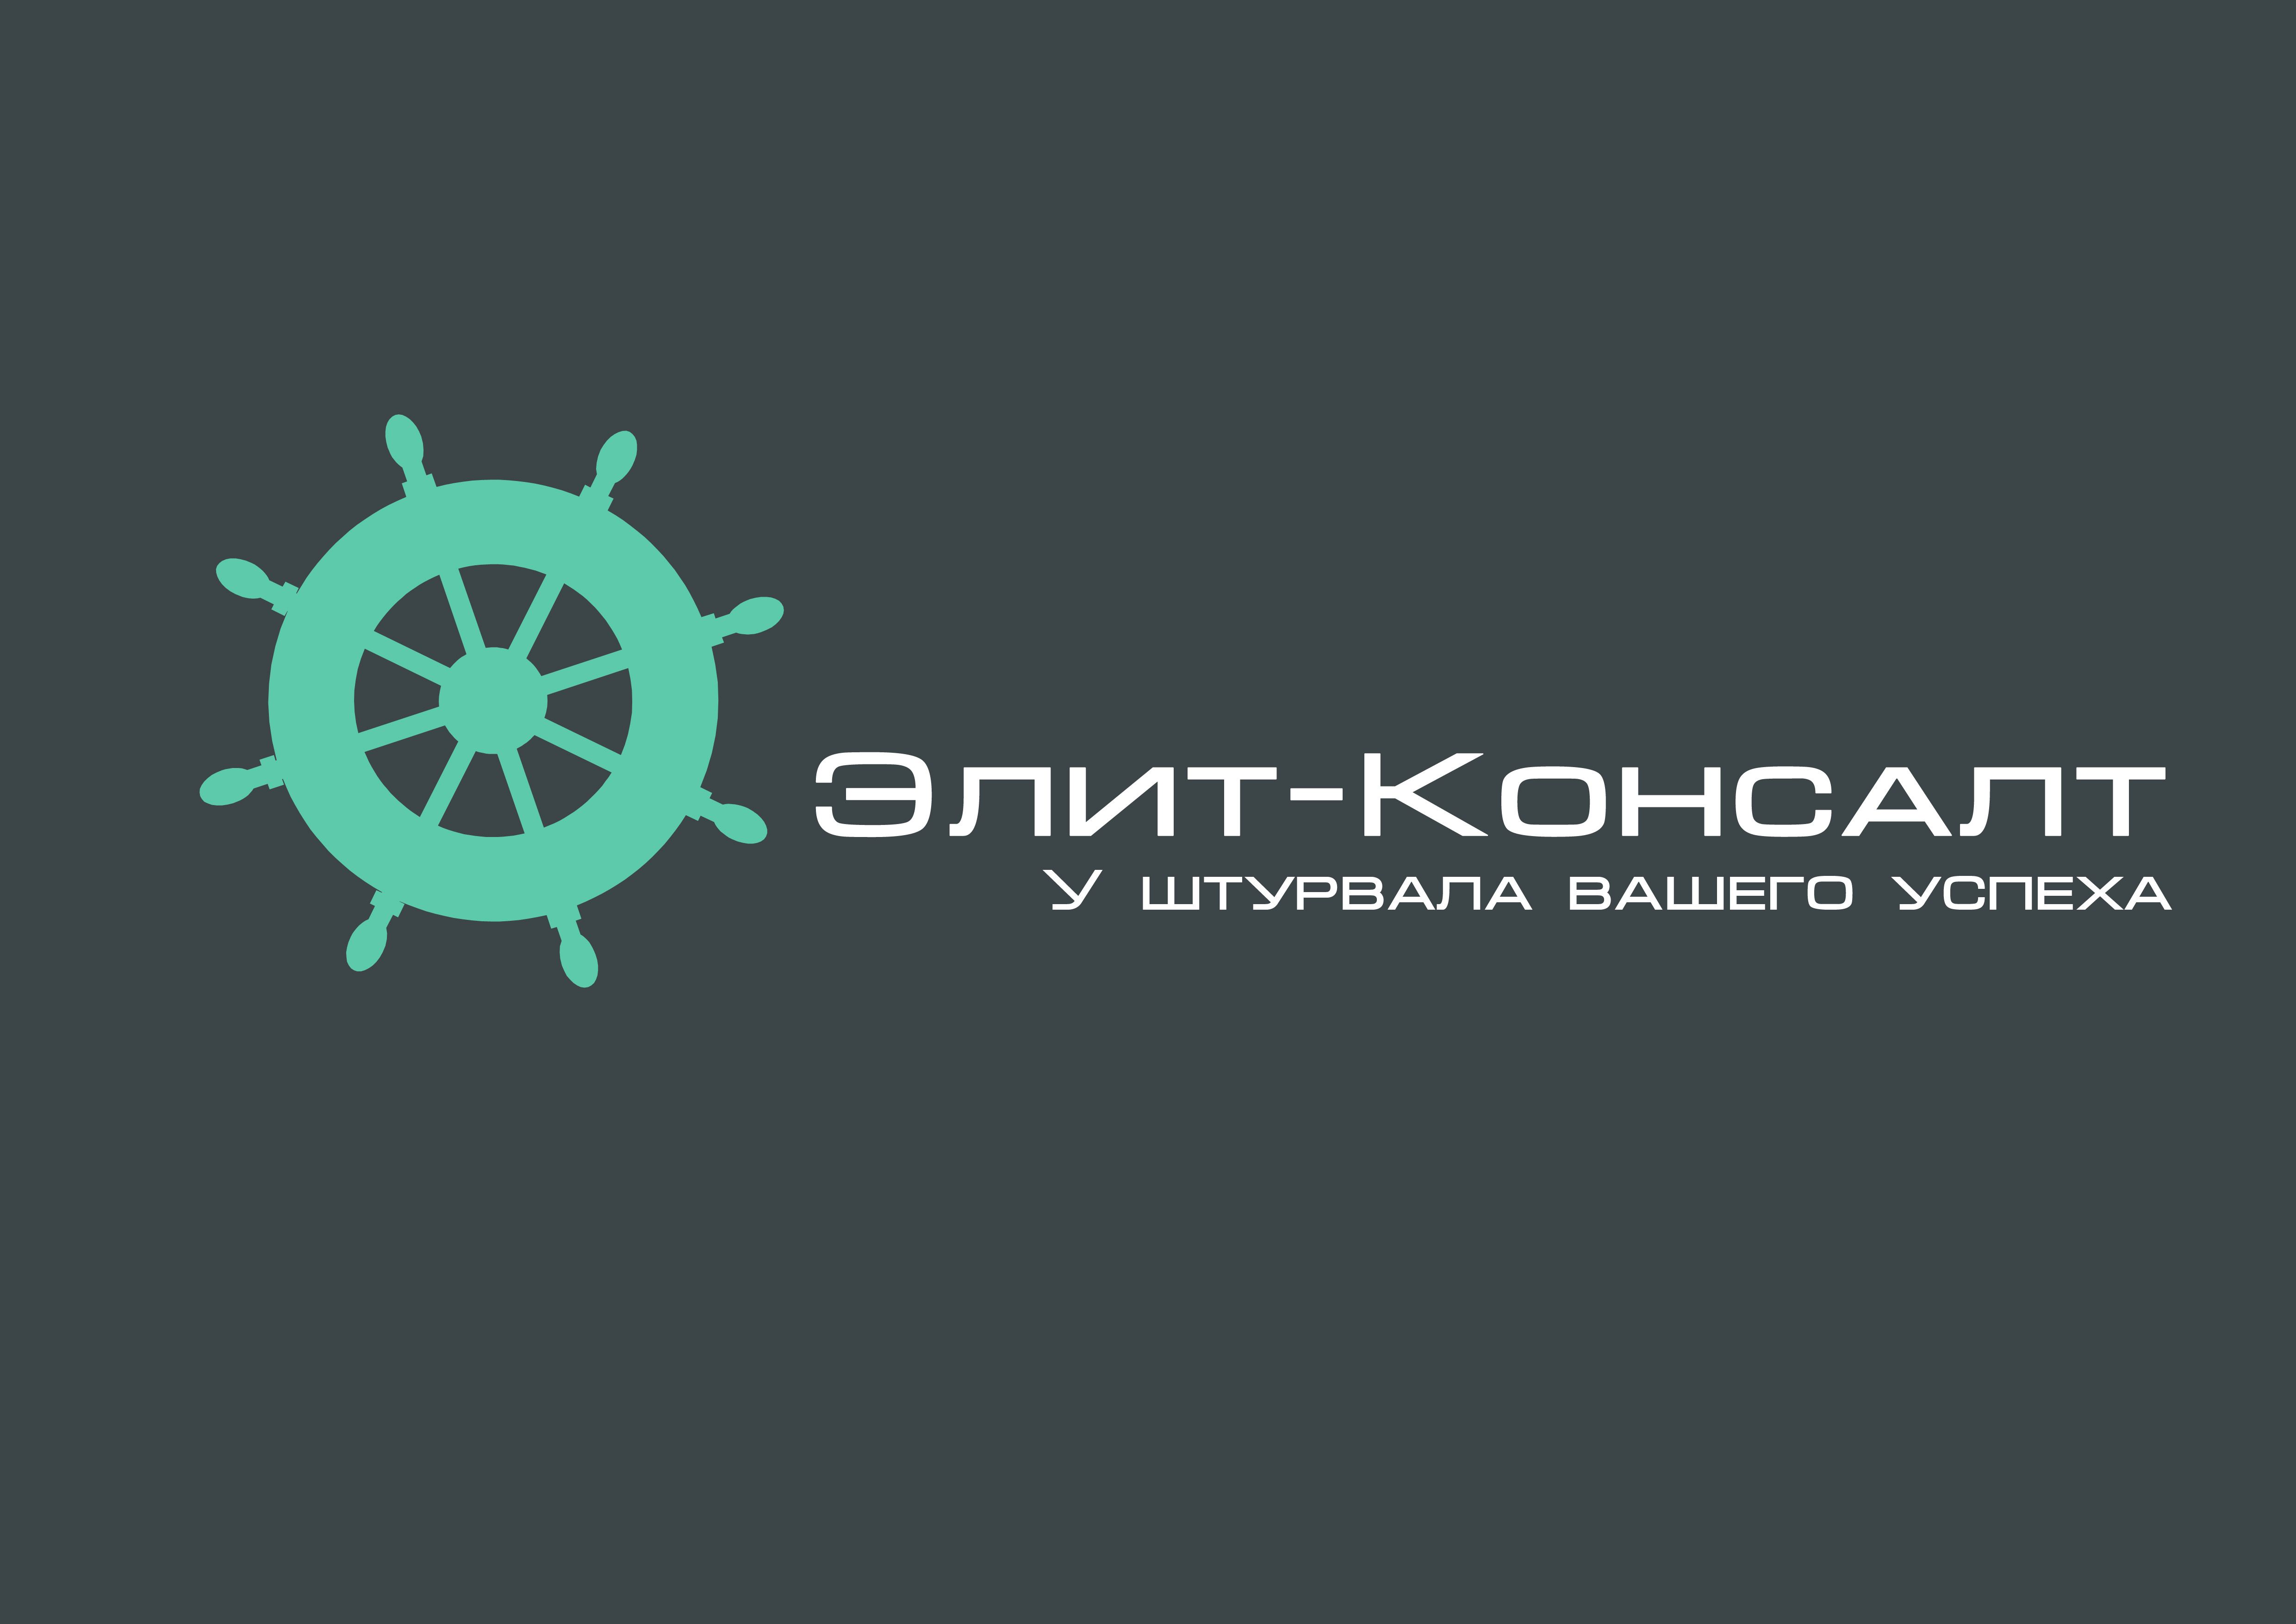 Логотип консалт-компании. Ждем еще предложения! - дизайнер Andrey17061706